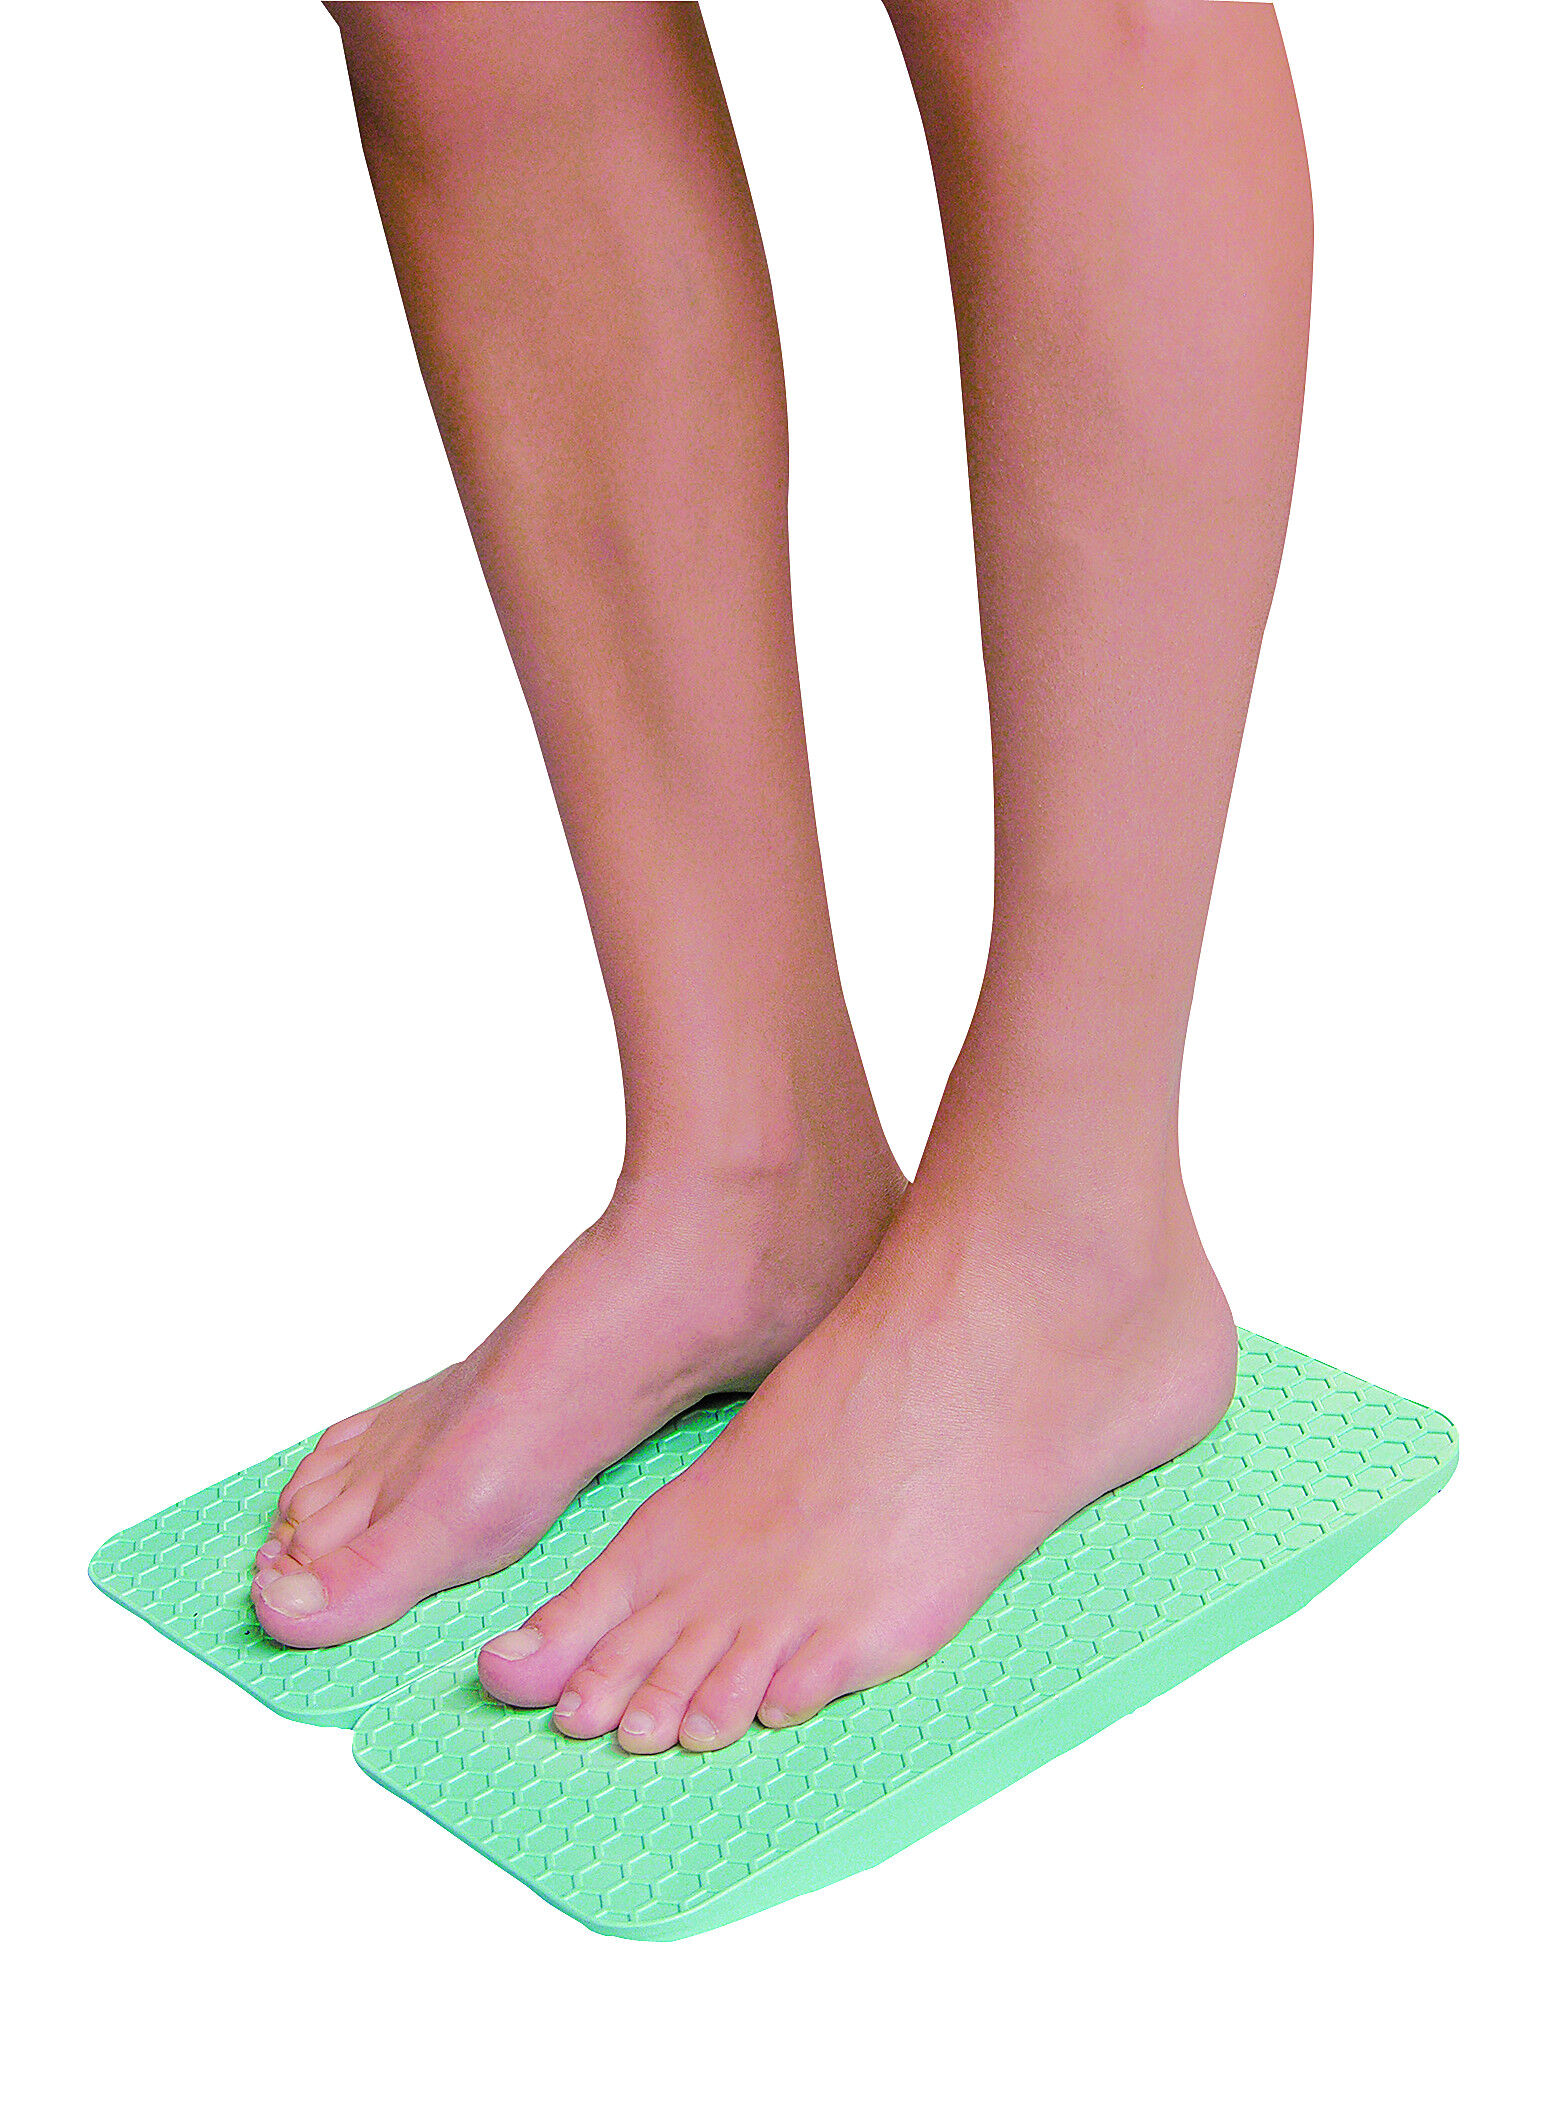 RO+TEN Tavoletta per riabilitazione caviglia - Per la stabilizzazione e l'equilibrio - Doppia